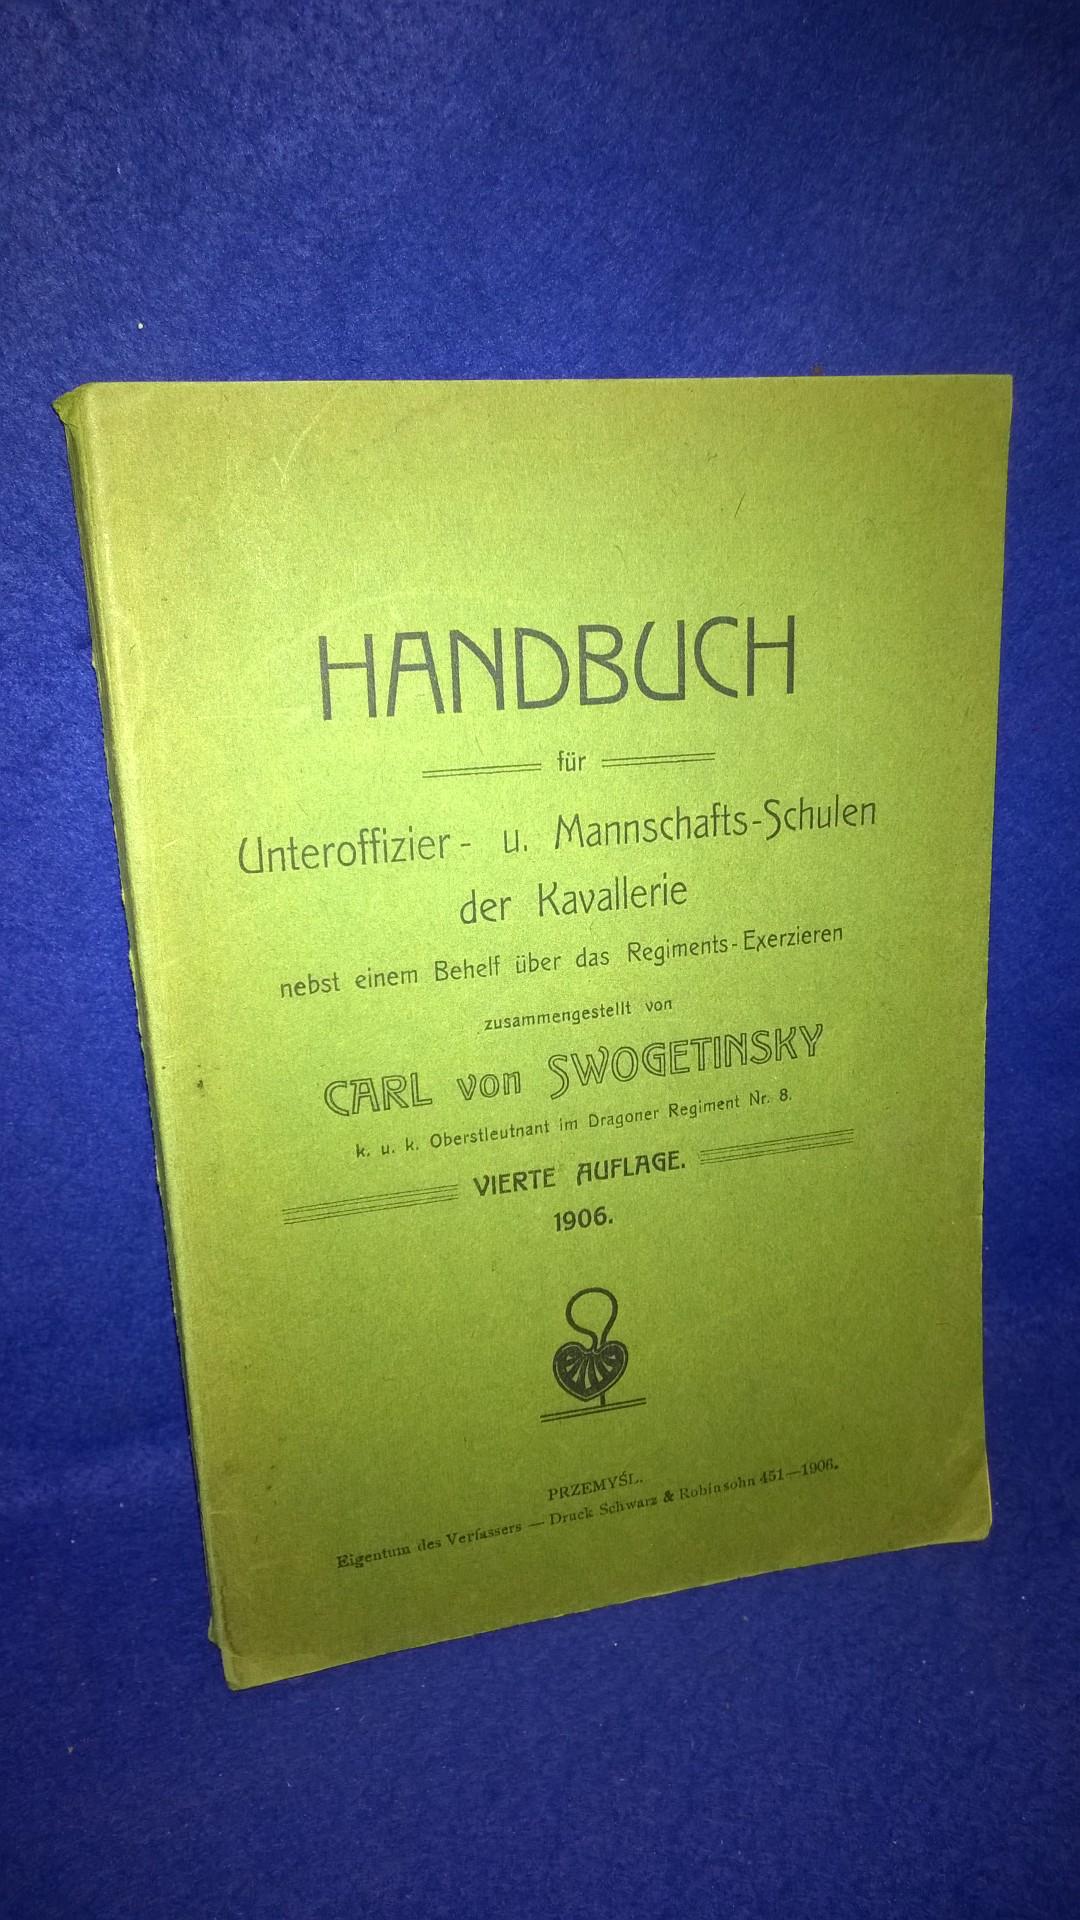 Handbuch für Unteroffizier- und Mannschafts-Schulen der Kavallerie nebst einem Behelf über das Regiments-Exerzieren.